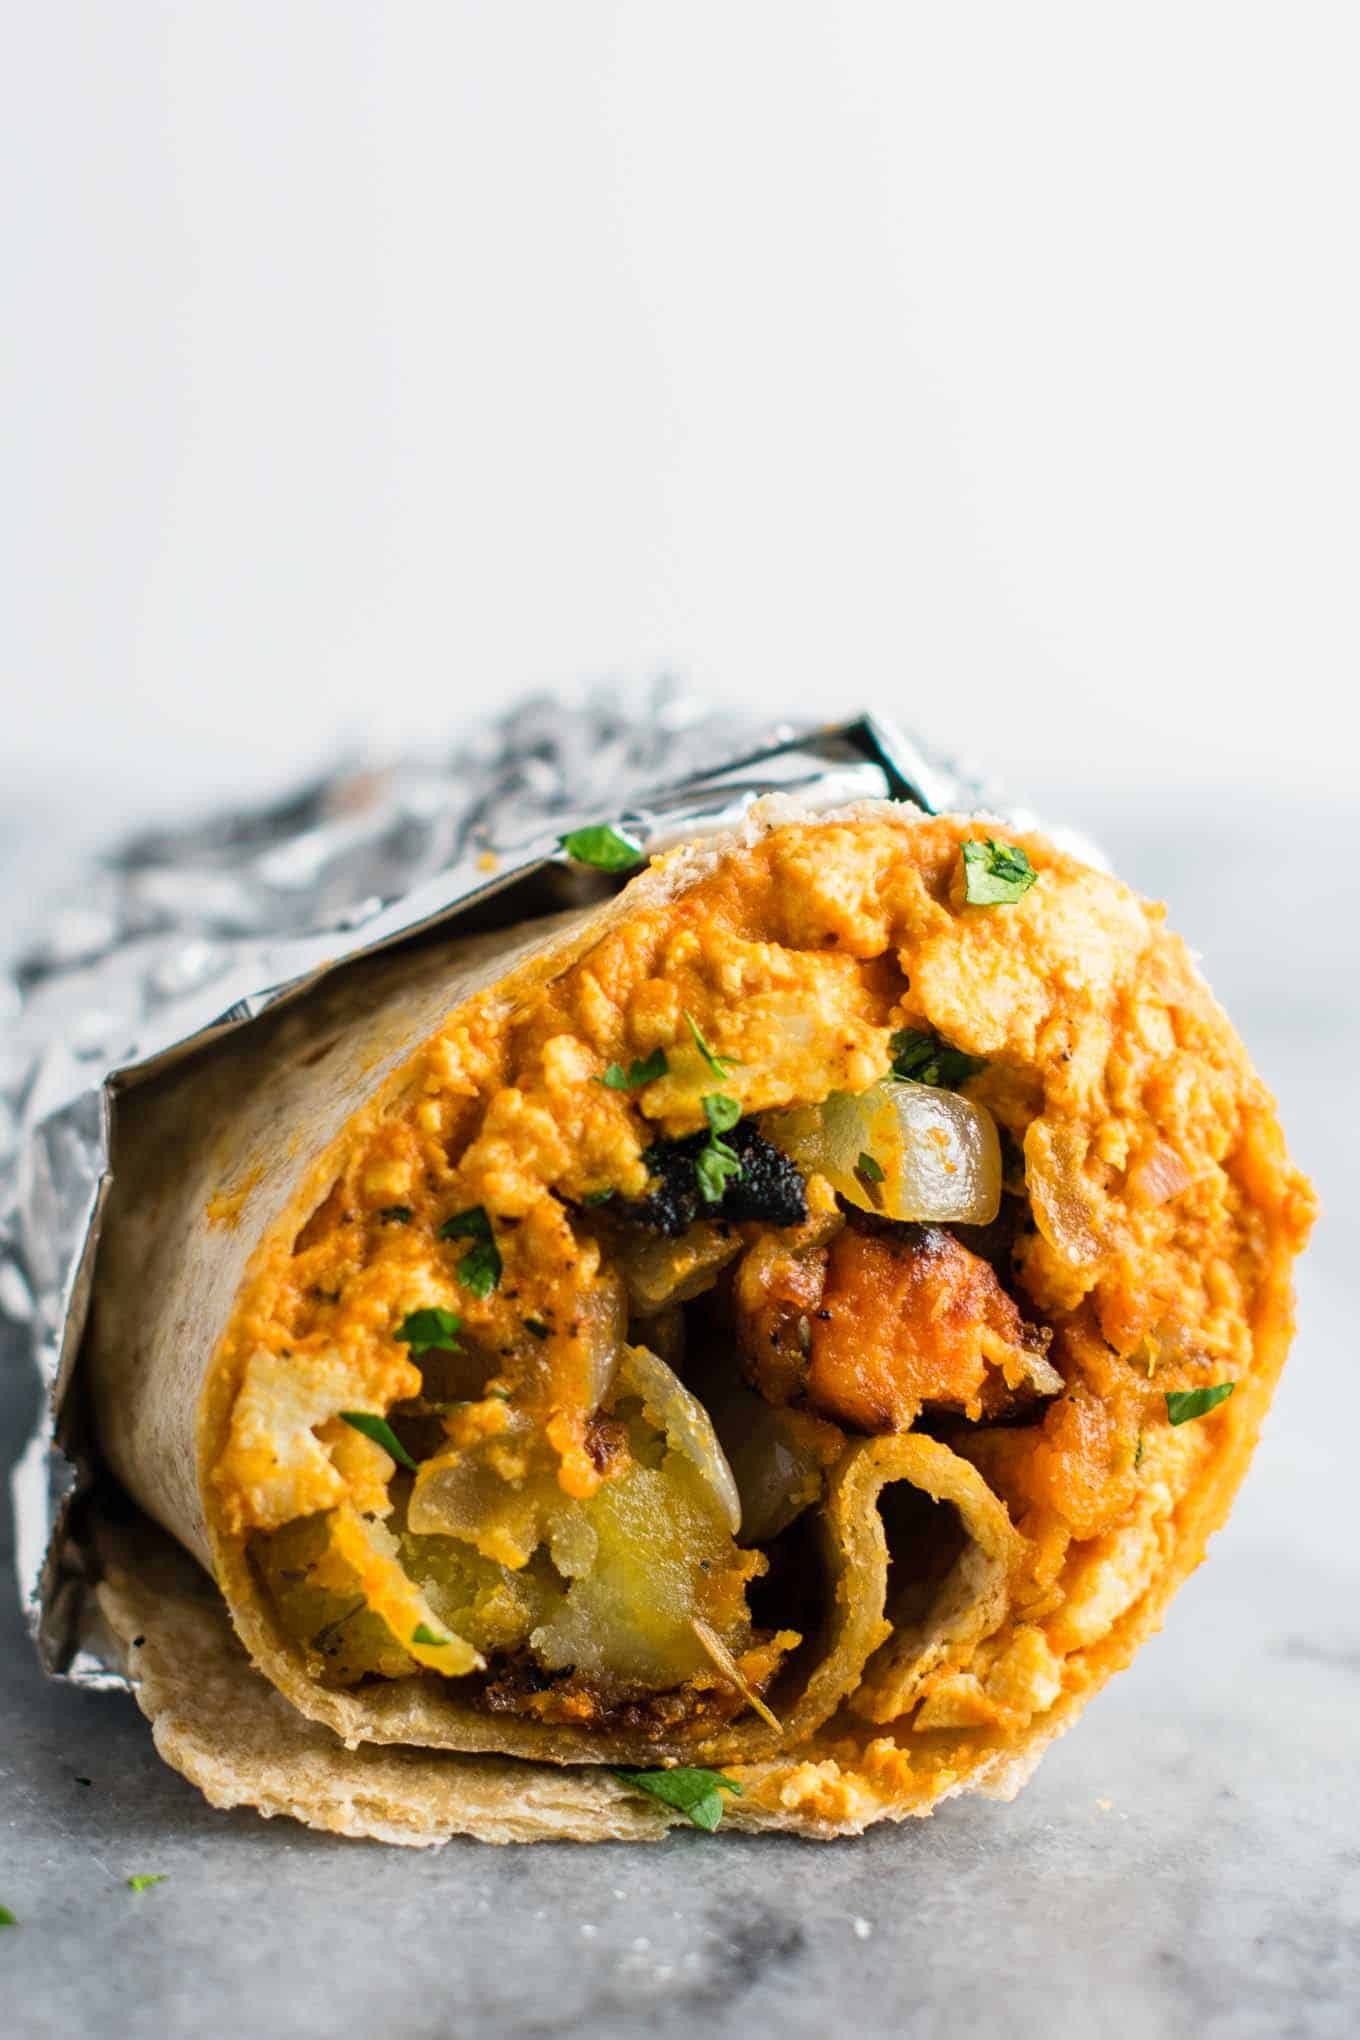 Vegetarian Burrito Recipes
 The Best Vegan Breakfast Burrito Recipe Build Your Bite